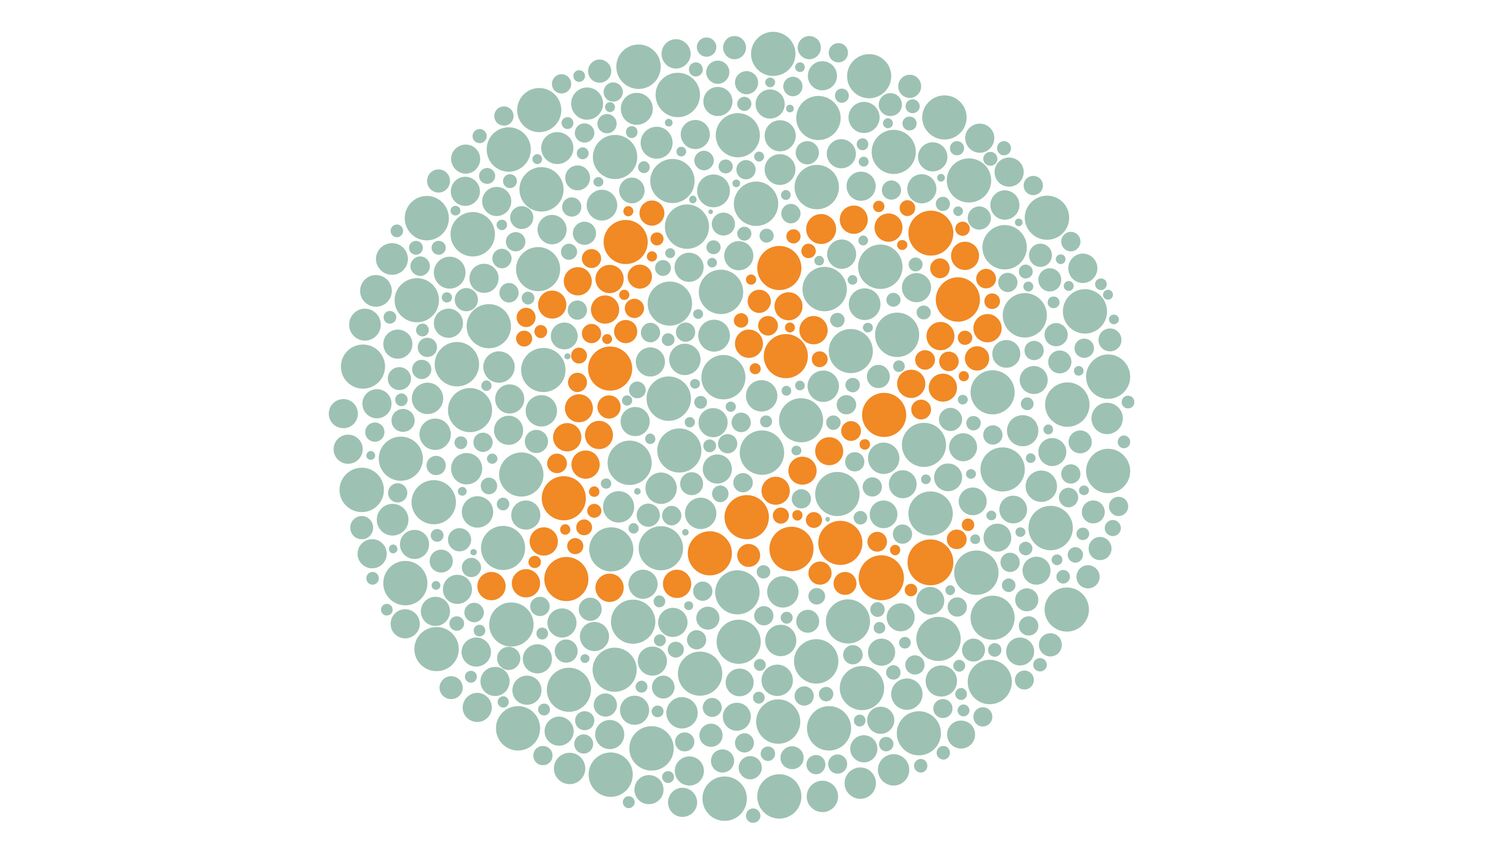 Grafik zur Demonstration der Augenkrankheit Farbfehlsichtigkeit